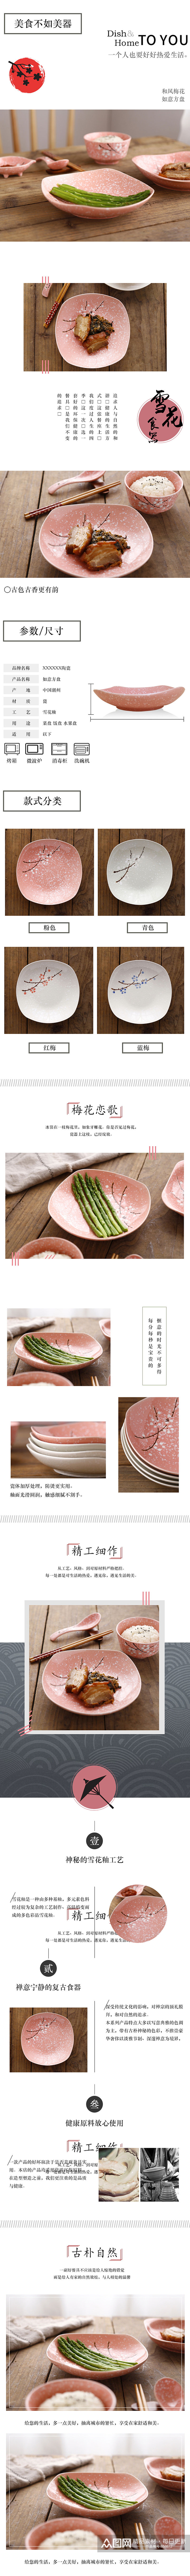 日式陶瓷餐具方形盘子详情页素材